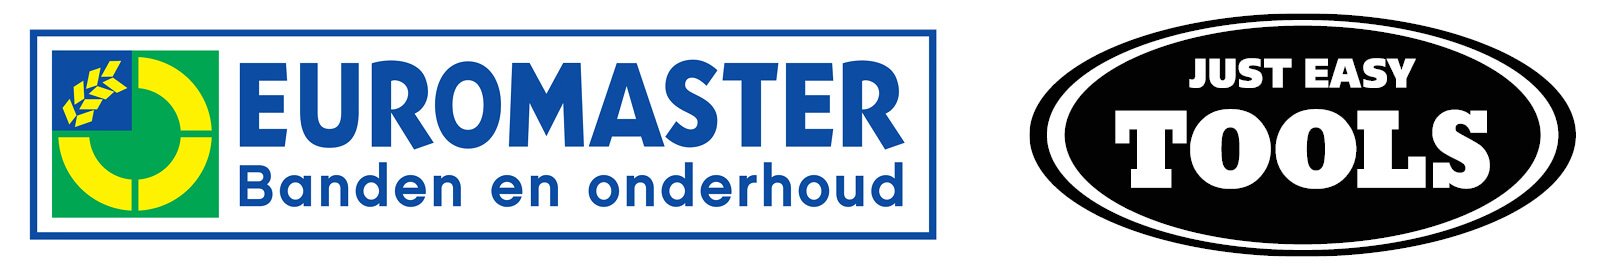 Euromaster Países Bajos y Just Easy Tools logotipos